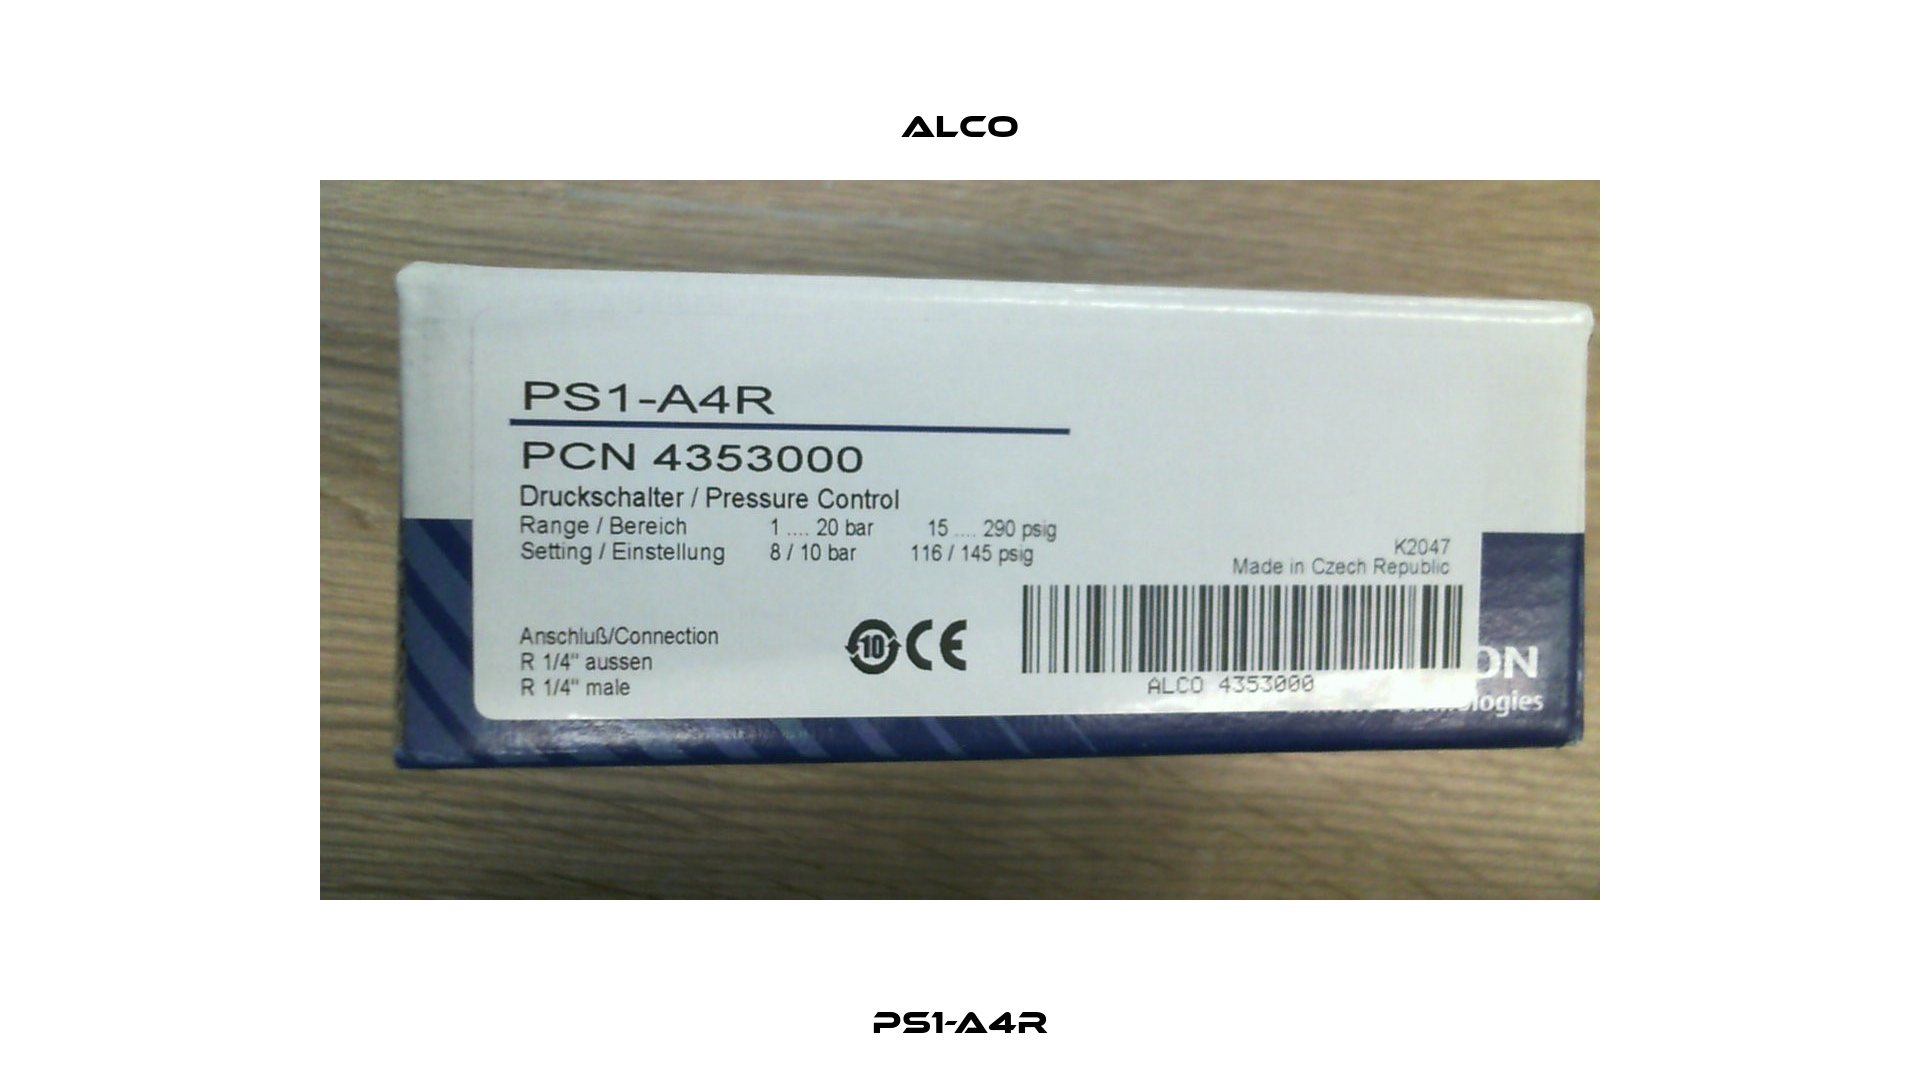 PS1-A4R Alco